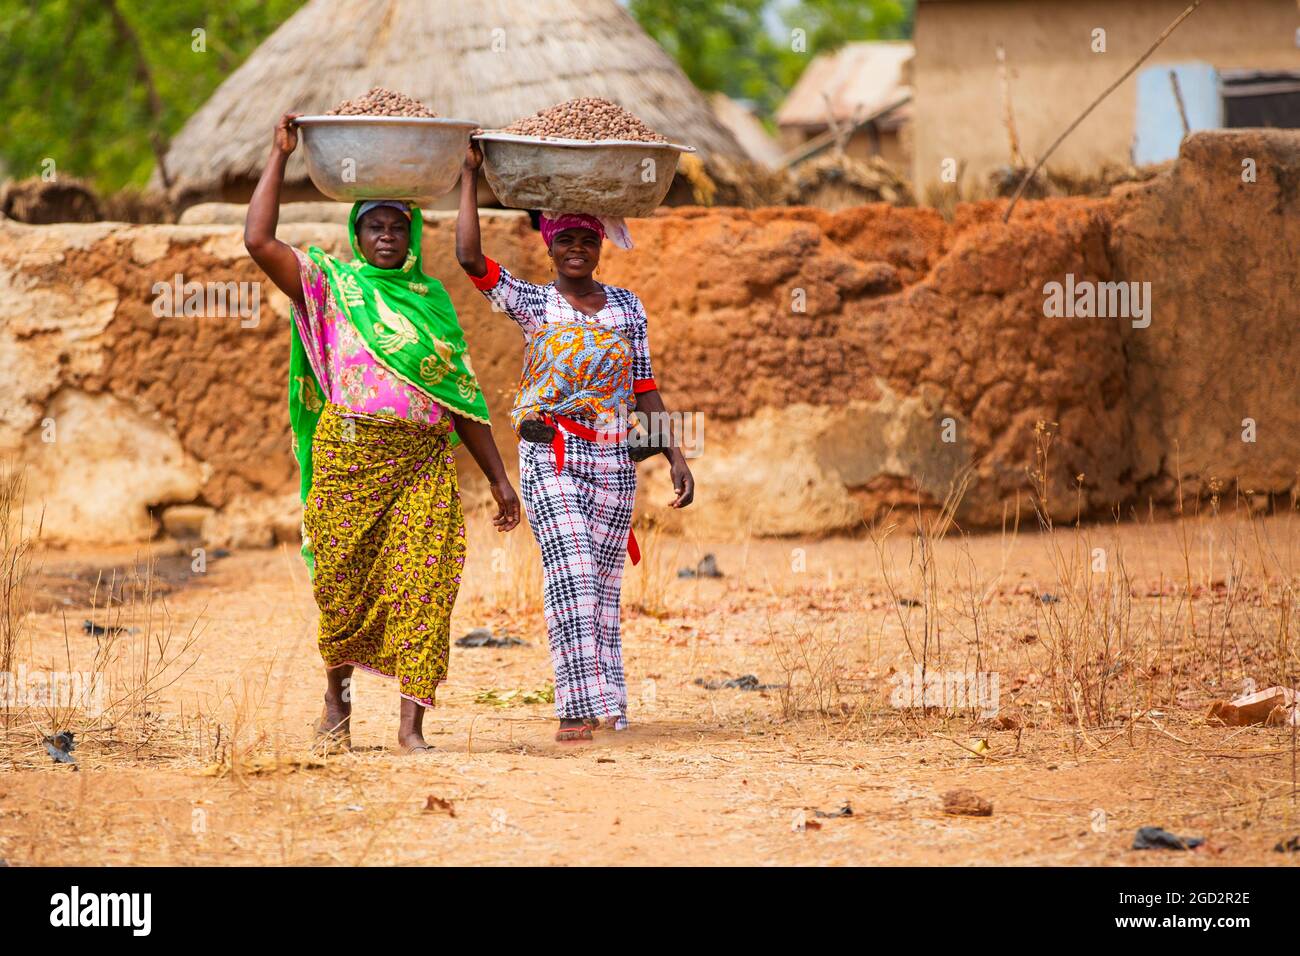 Ces deux femmes de village d'Afrique de l'Ouest dans la robe traditionnelle colorée marcher avec de grands bols sur leur tête ca. 21 février 2018 Banque D'Images